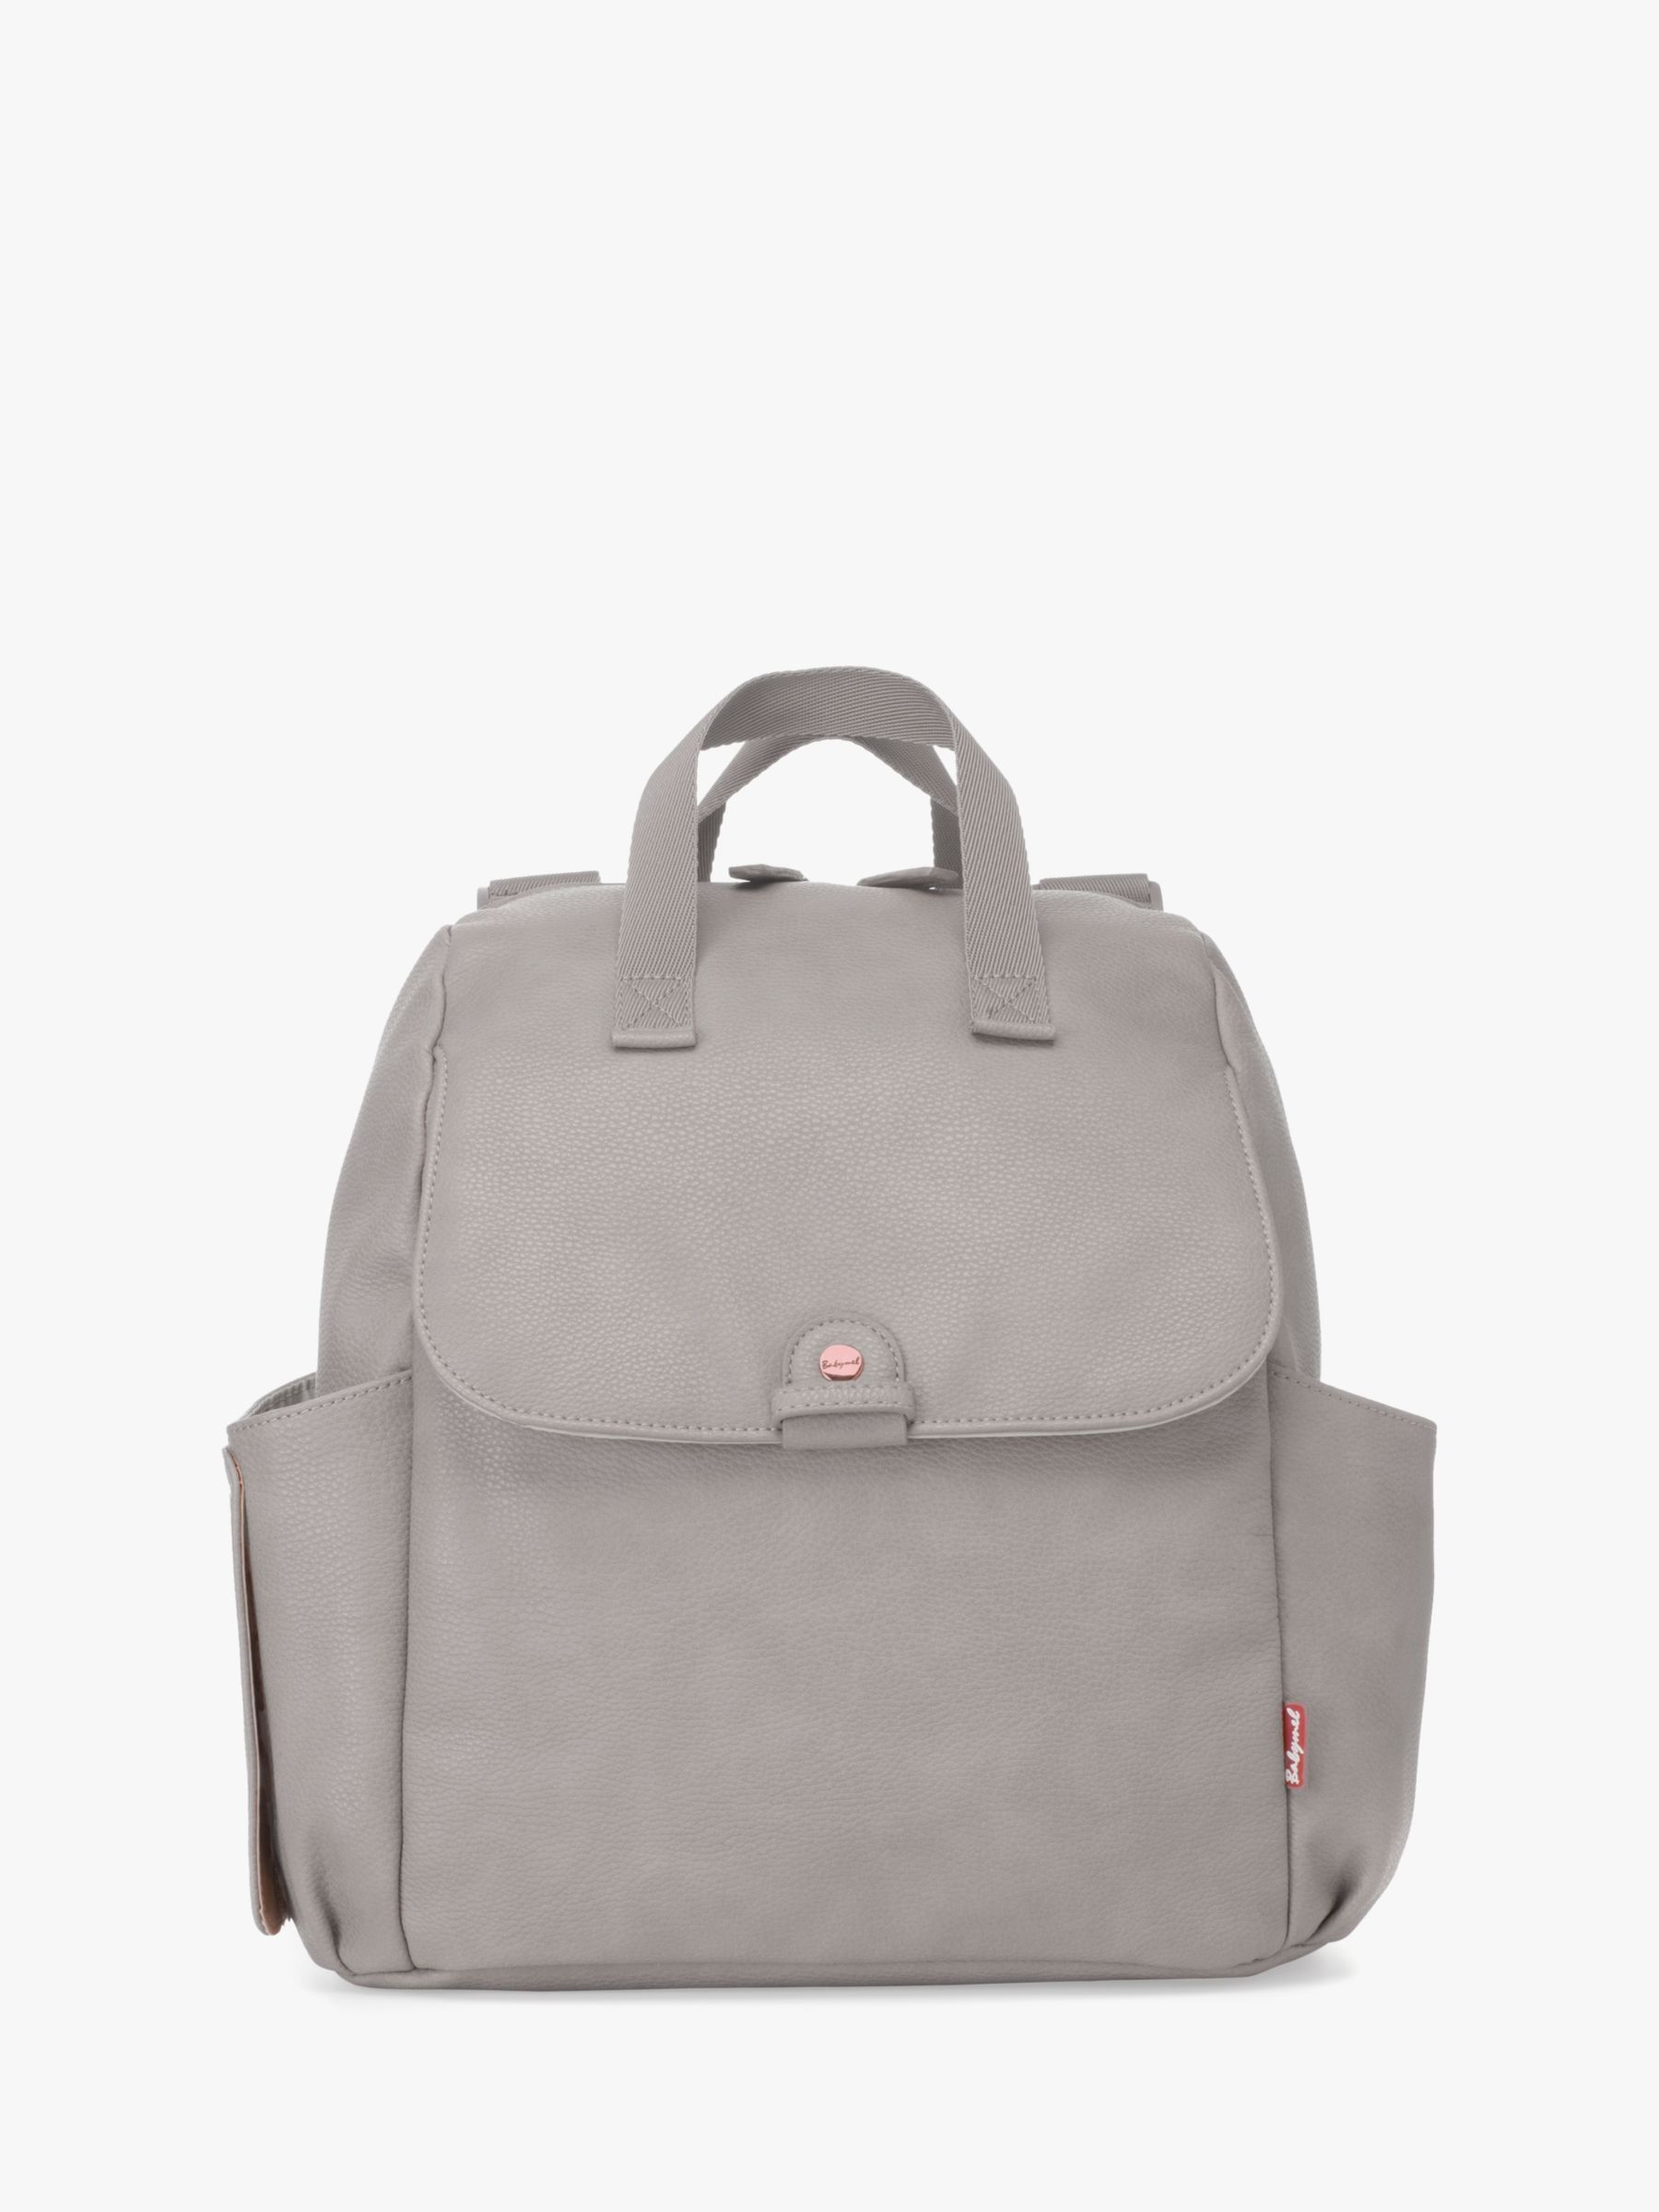 grey changing bag